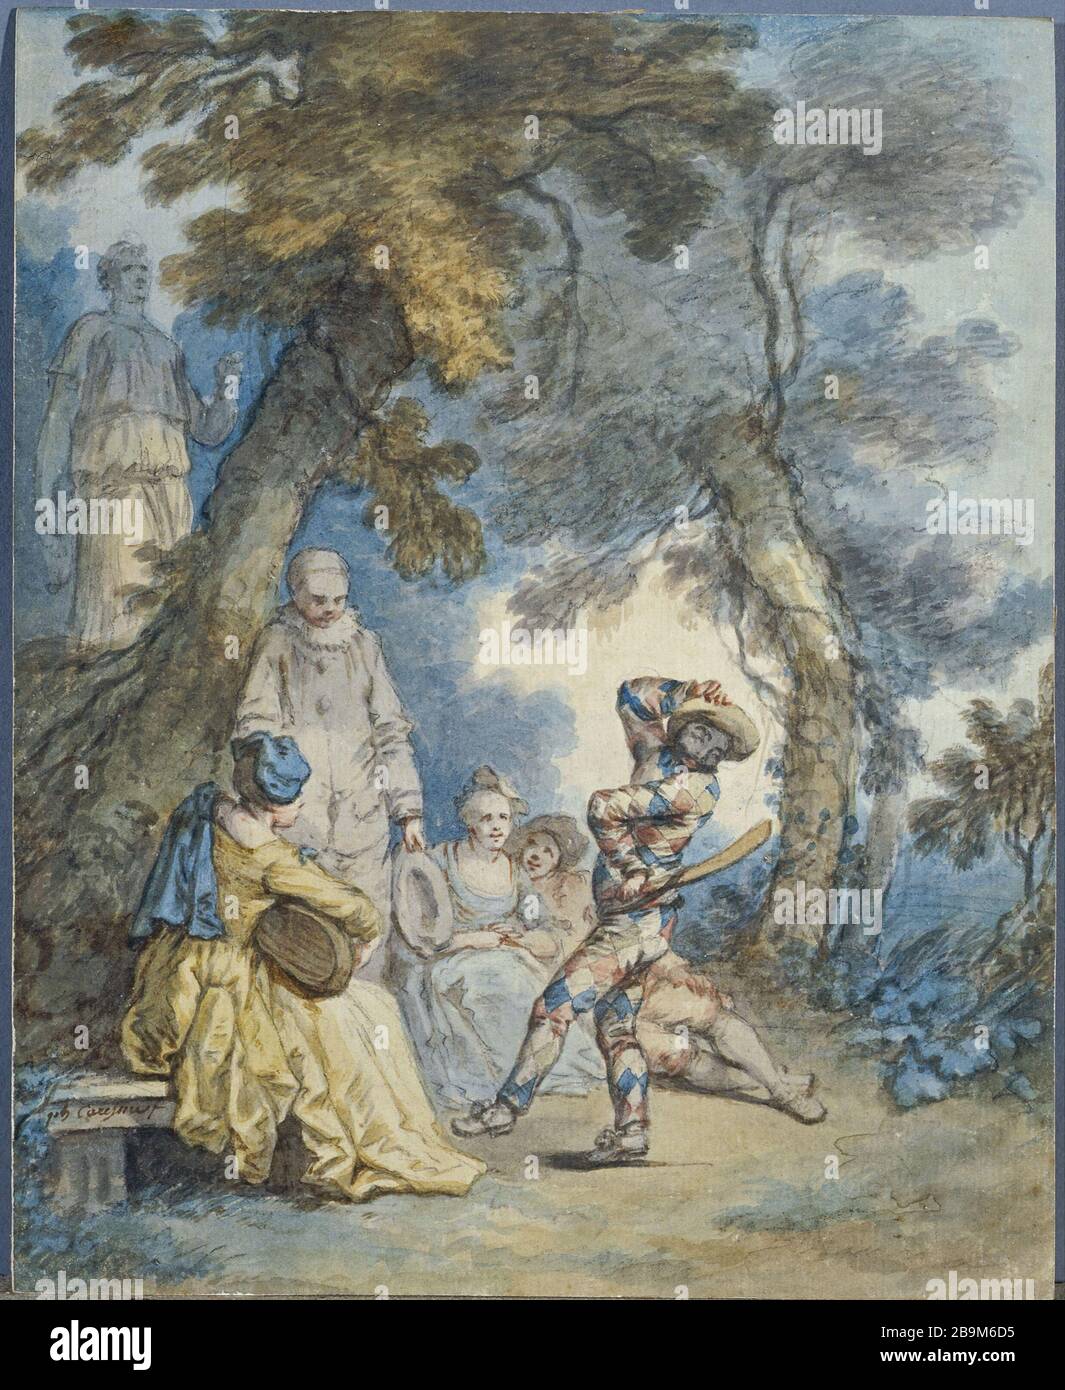 ARLEQUIN Philippe Caresme (1734-1796). 'Arlequin'. Aquarelle avec rehauts de gouache sur papier. Paris, musée Cognacq-Jay. Stock Photo